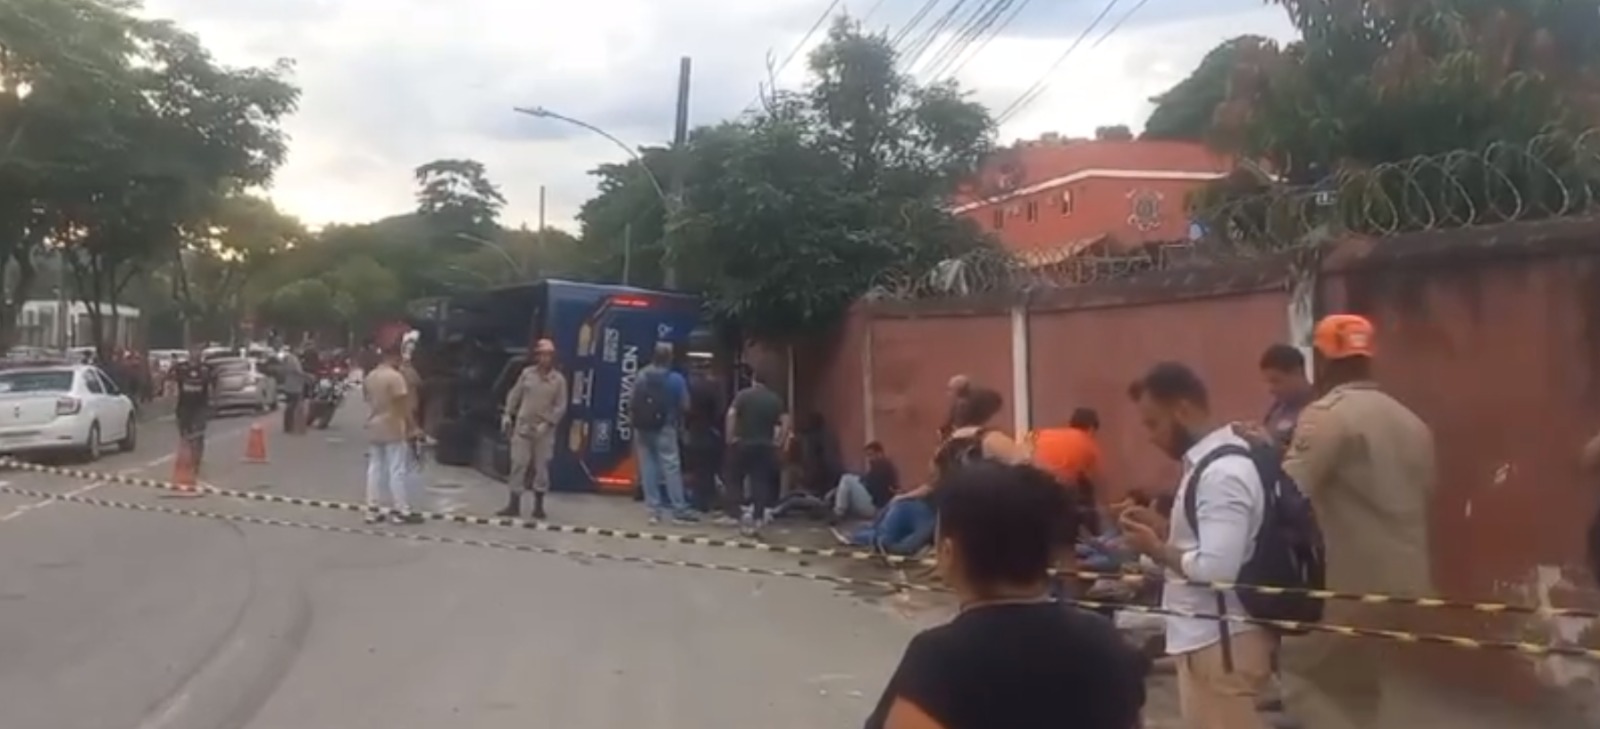 Ônibus lotado tomba em São Cristóvão e causa caos no trânsito da Zona Norte do Rio (Foto: Divulgação)